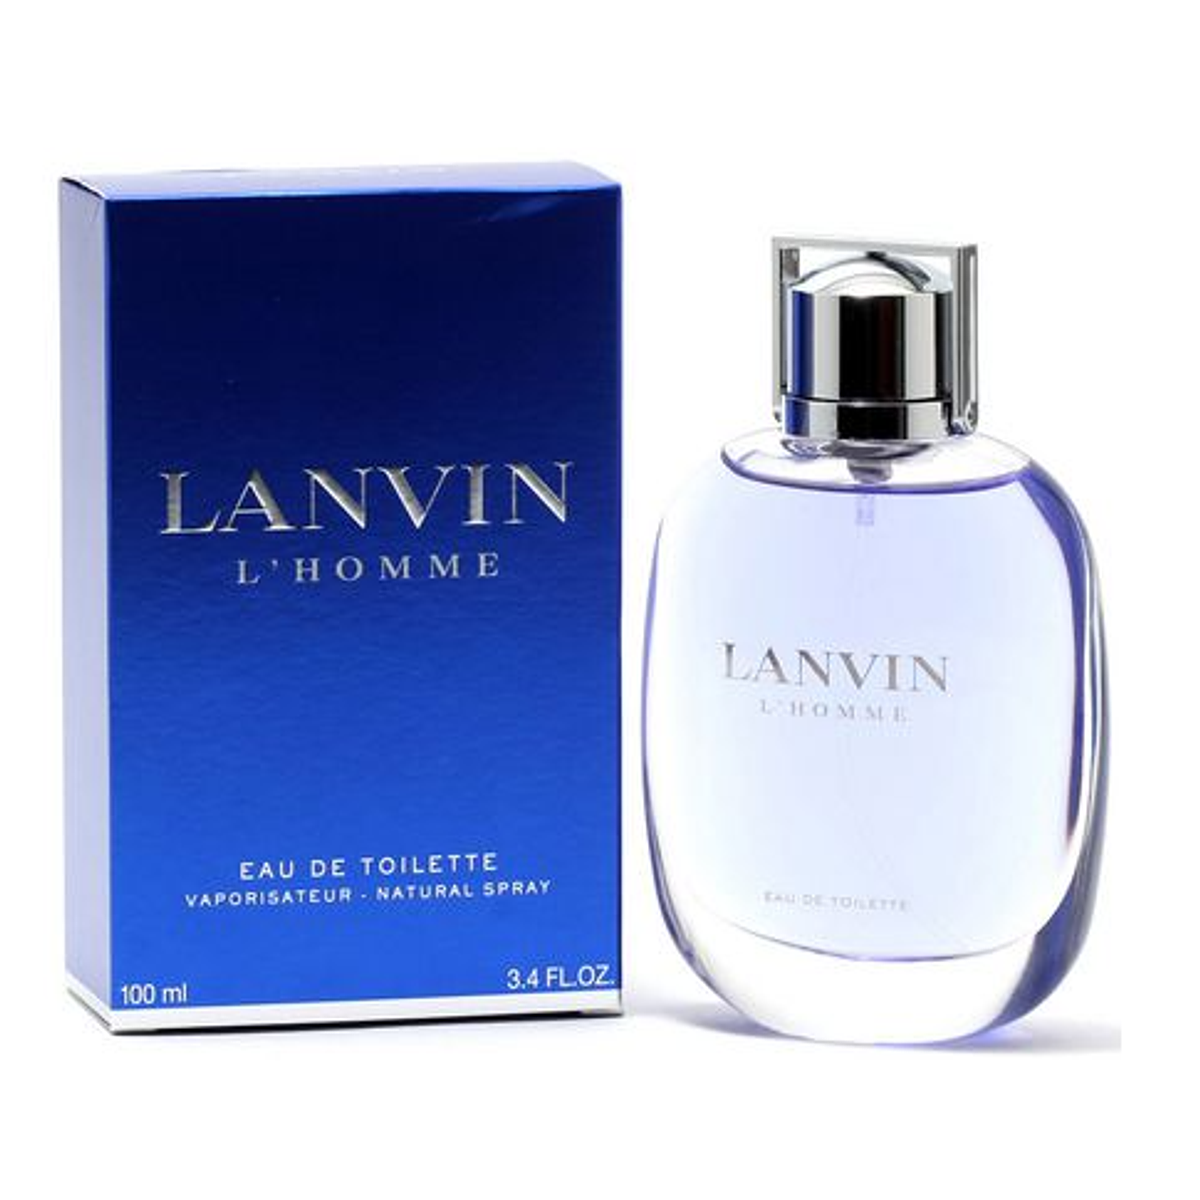 LANVIN L'HOMME EDT 100 ML - LANVIN